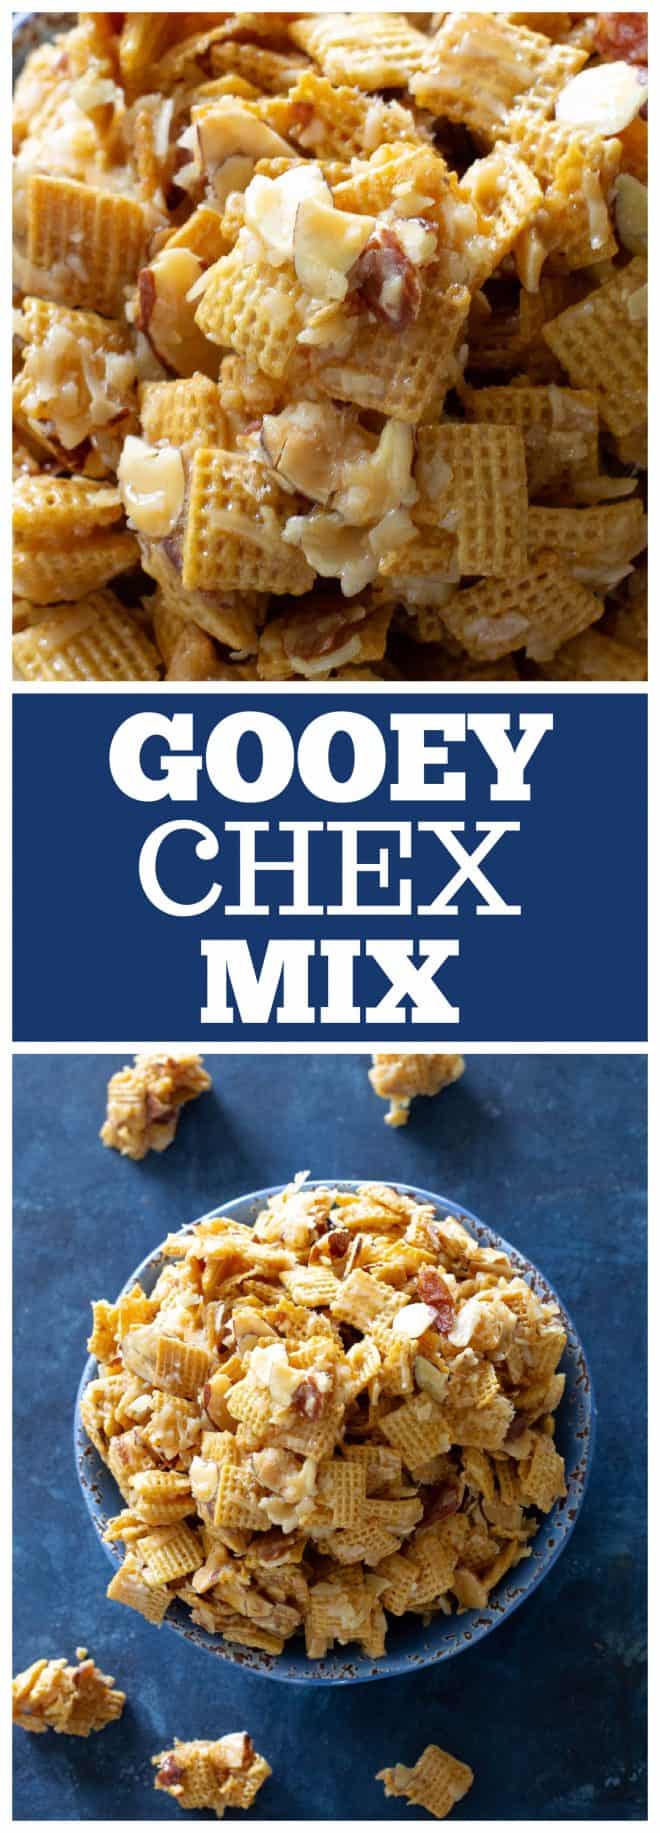 gooey chex mix